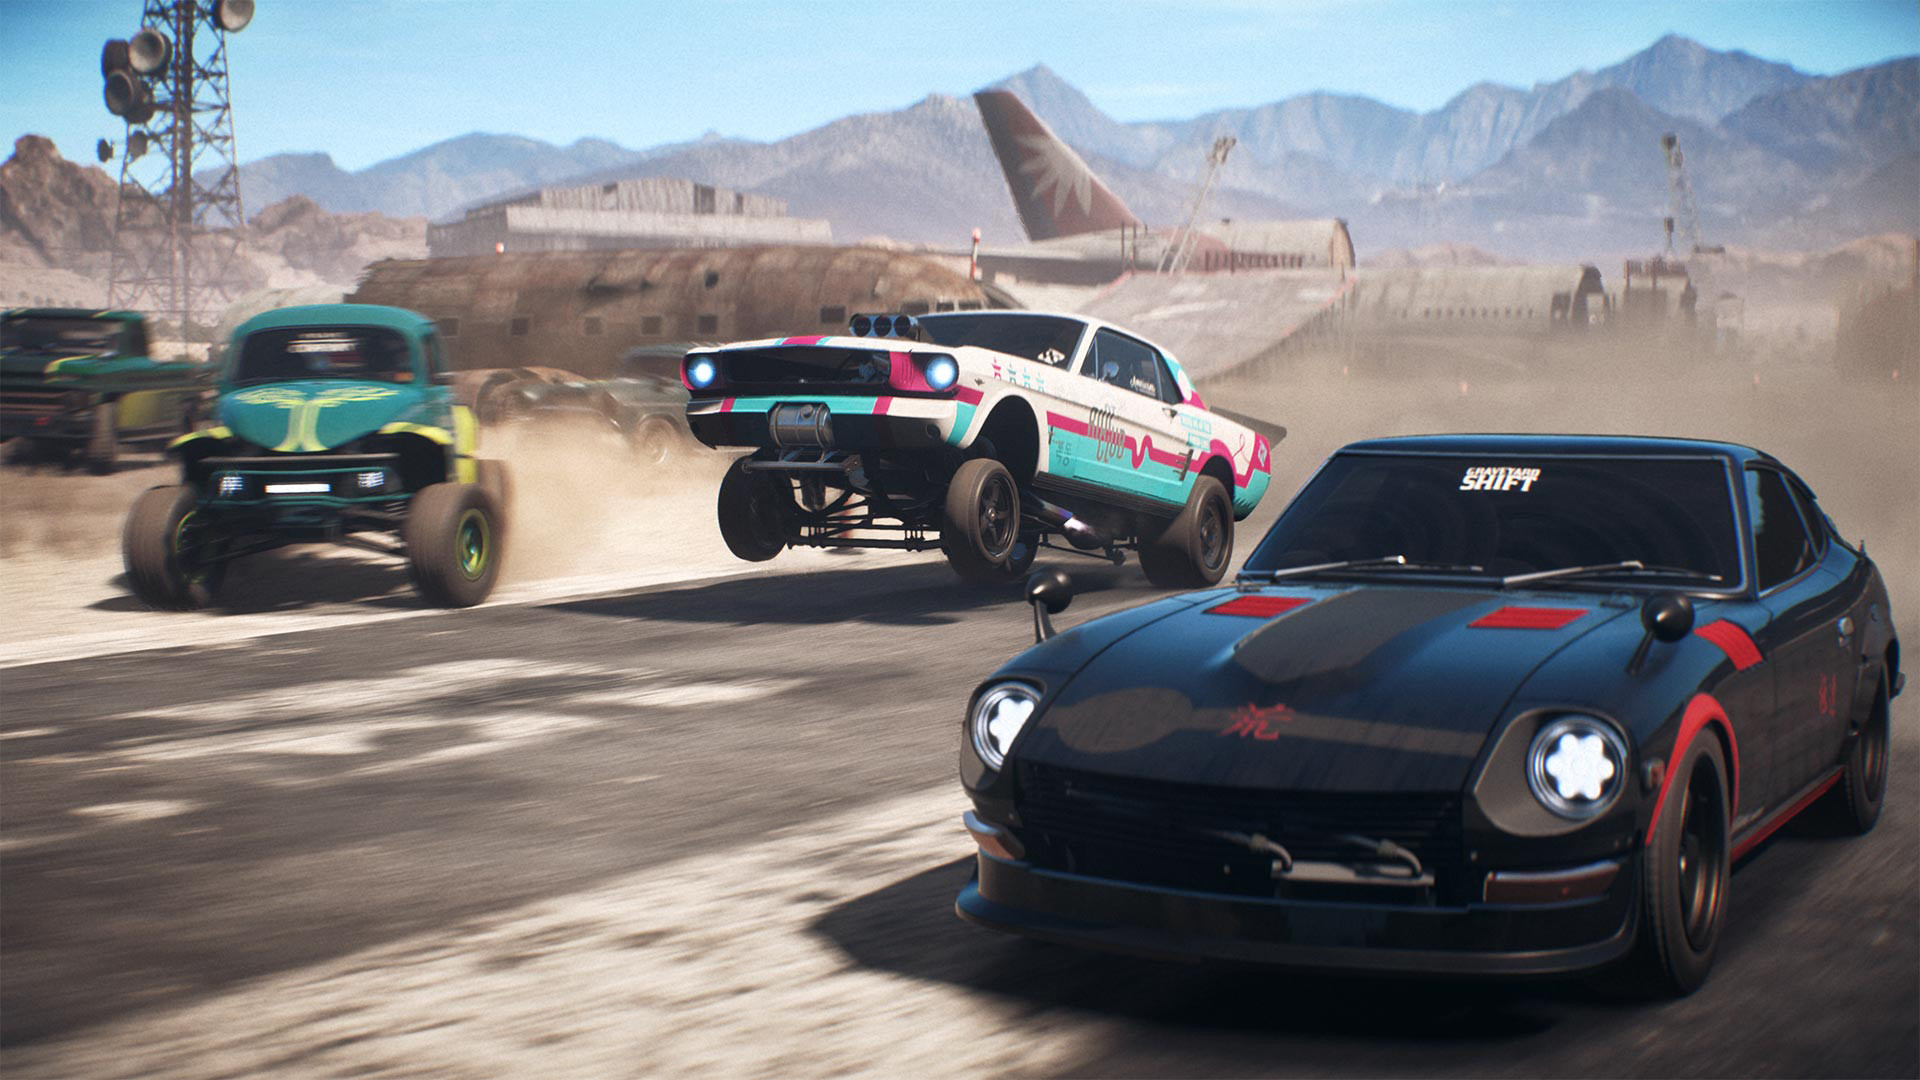 Fã de Need for Speed? Steam e EA Games liberam descontos de até 95% na franquia!